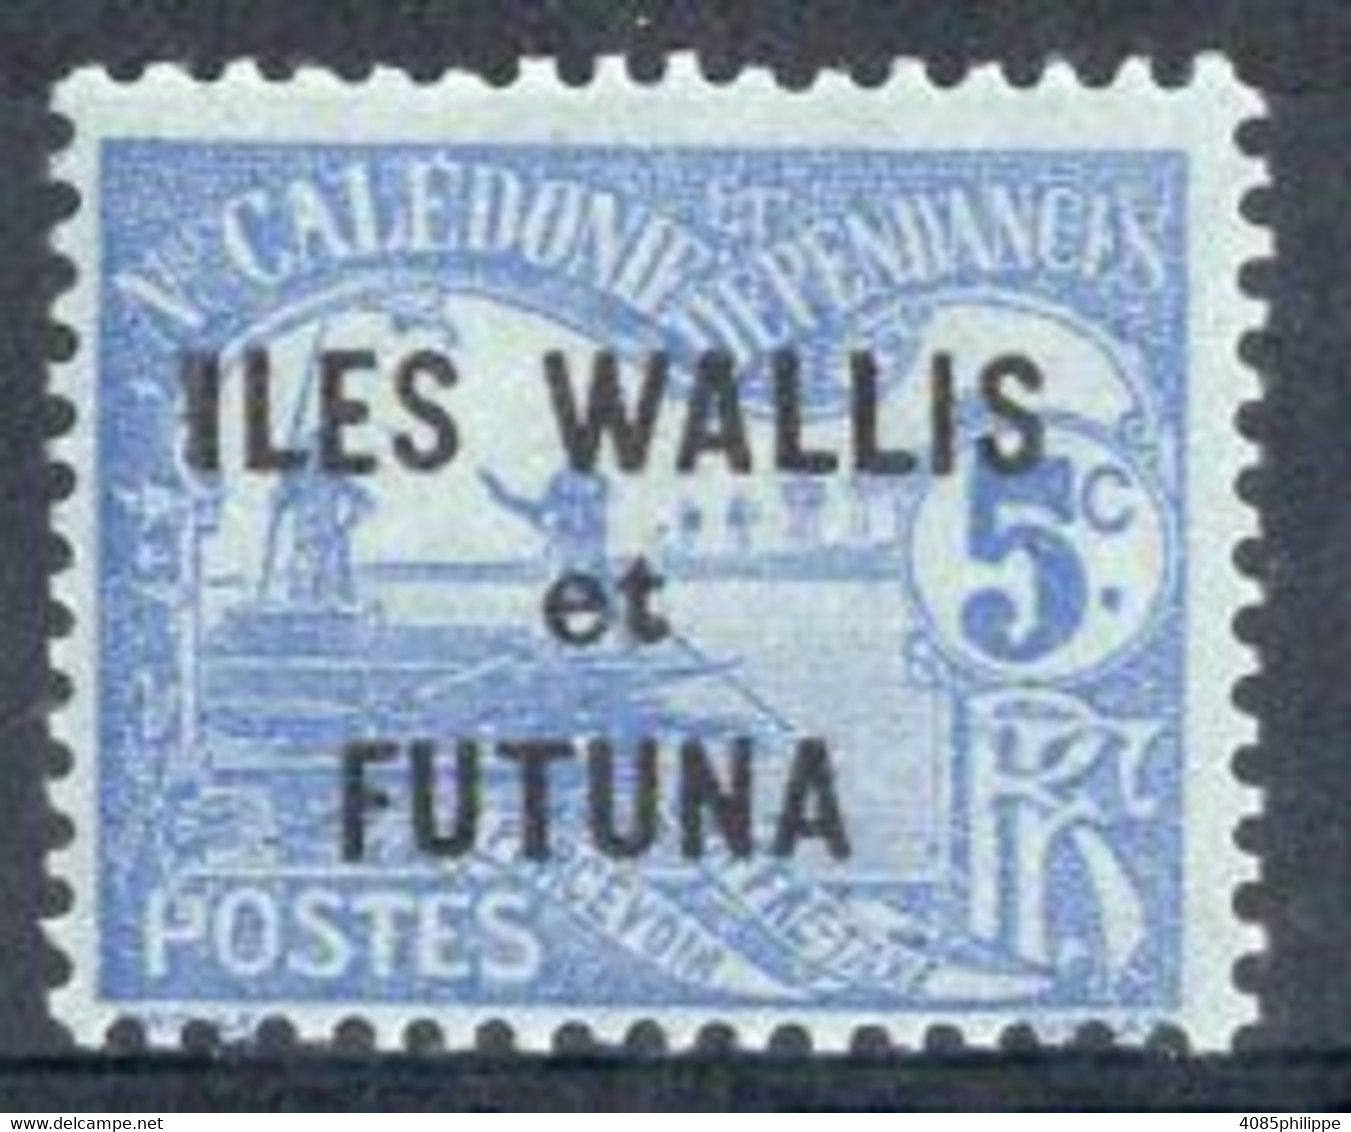 Wallis & Futuna Timbre-Taxe N°1** Neuf Sans Charnière TB Cote 2.50€ - Portomarken